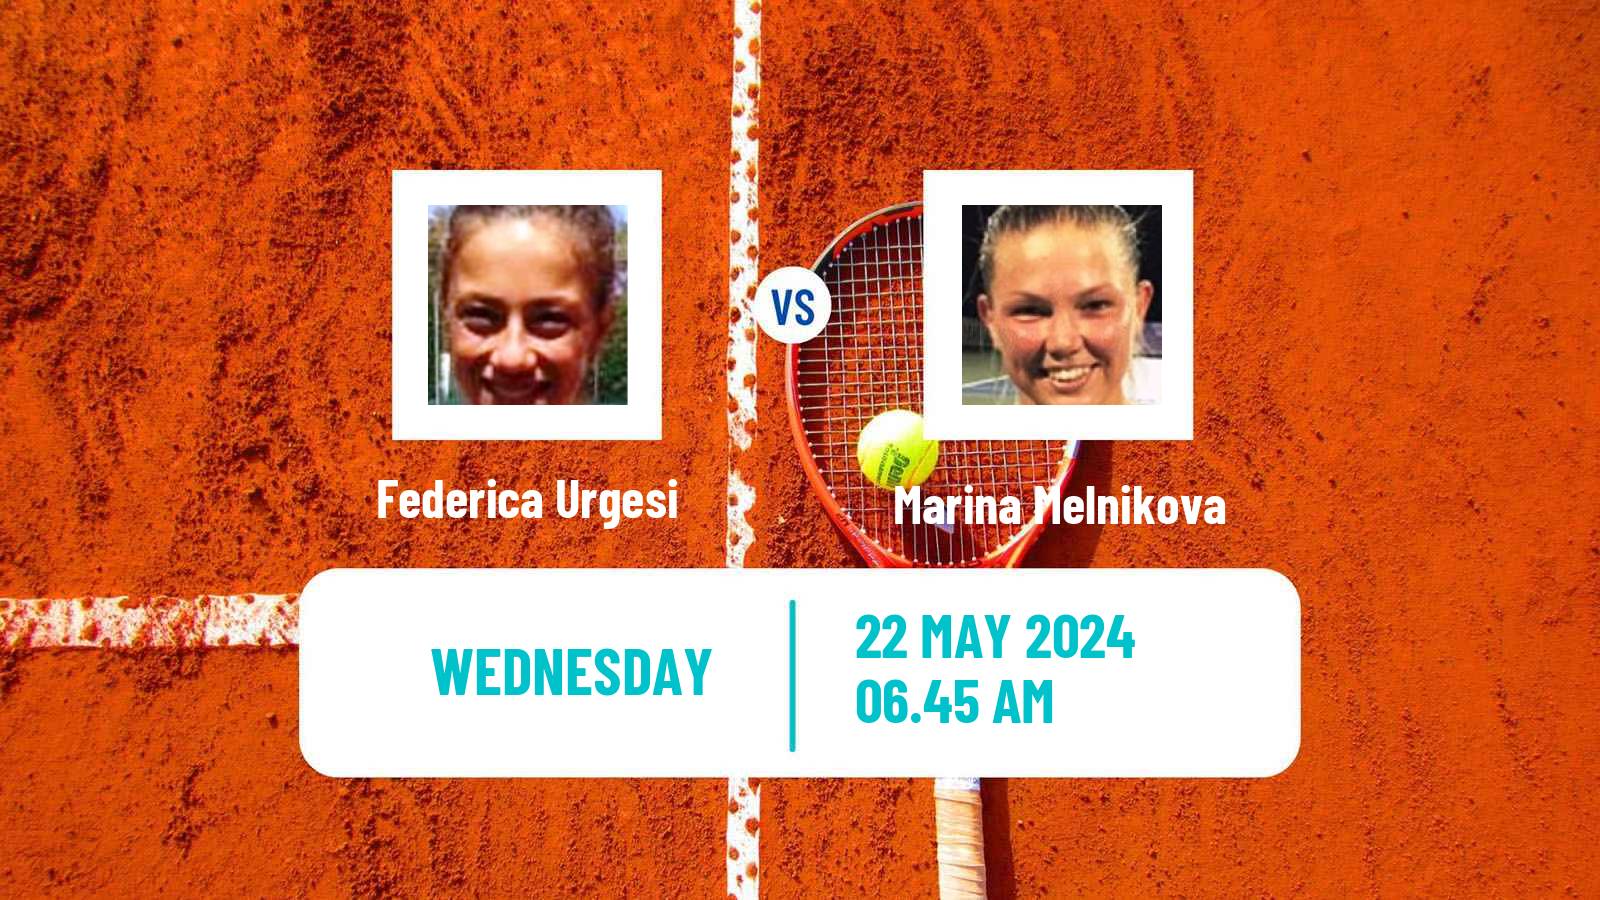 Tennis ITF W75 Grado Women Federica Urgesi - Marina Melnikova